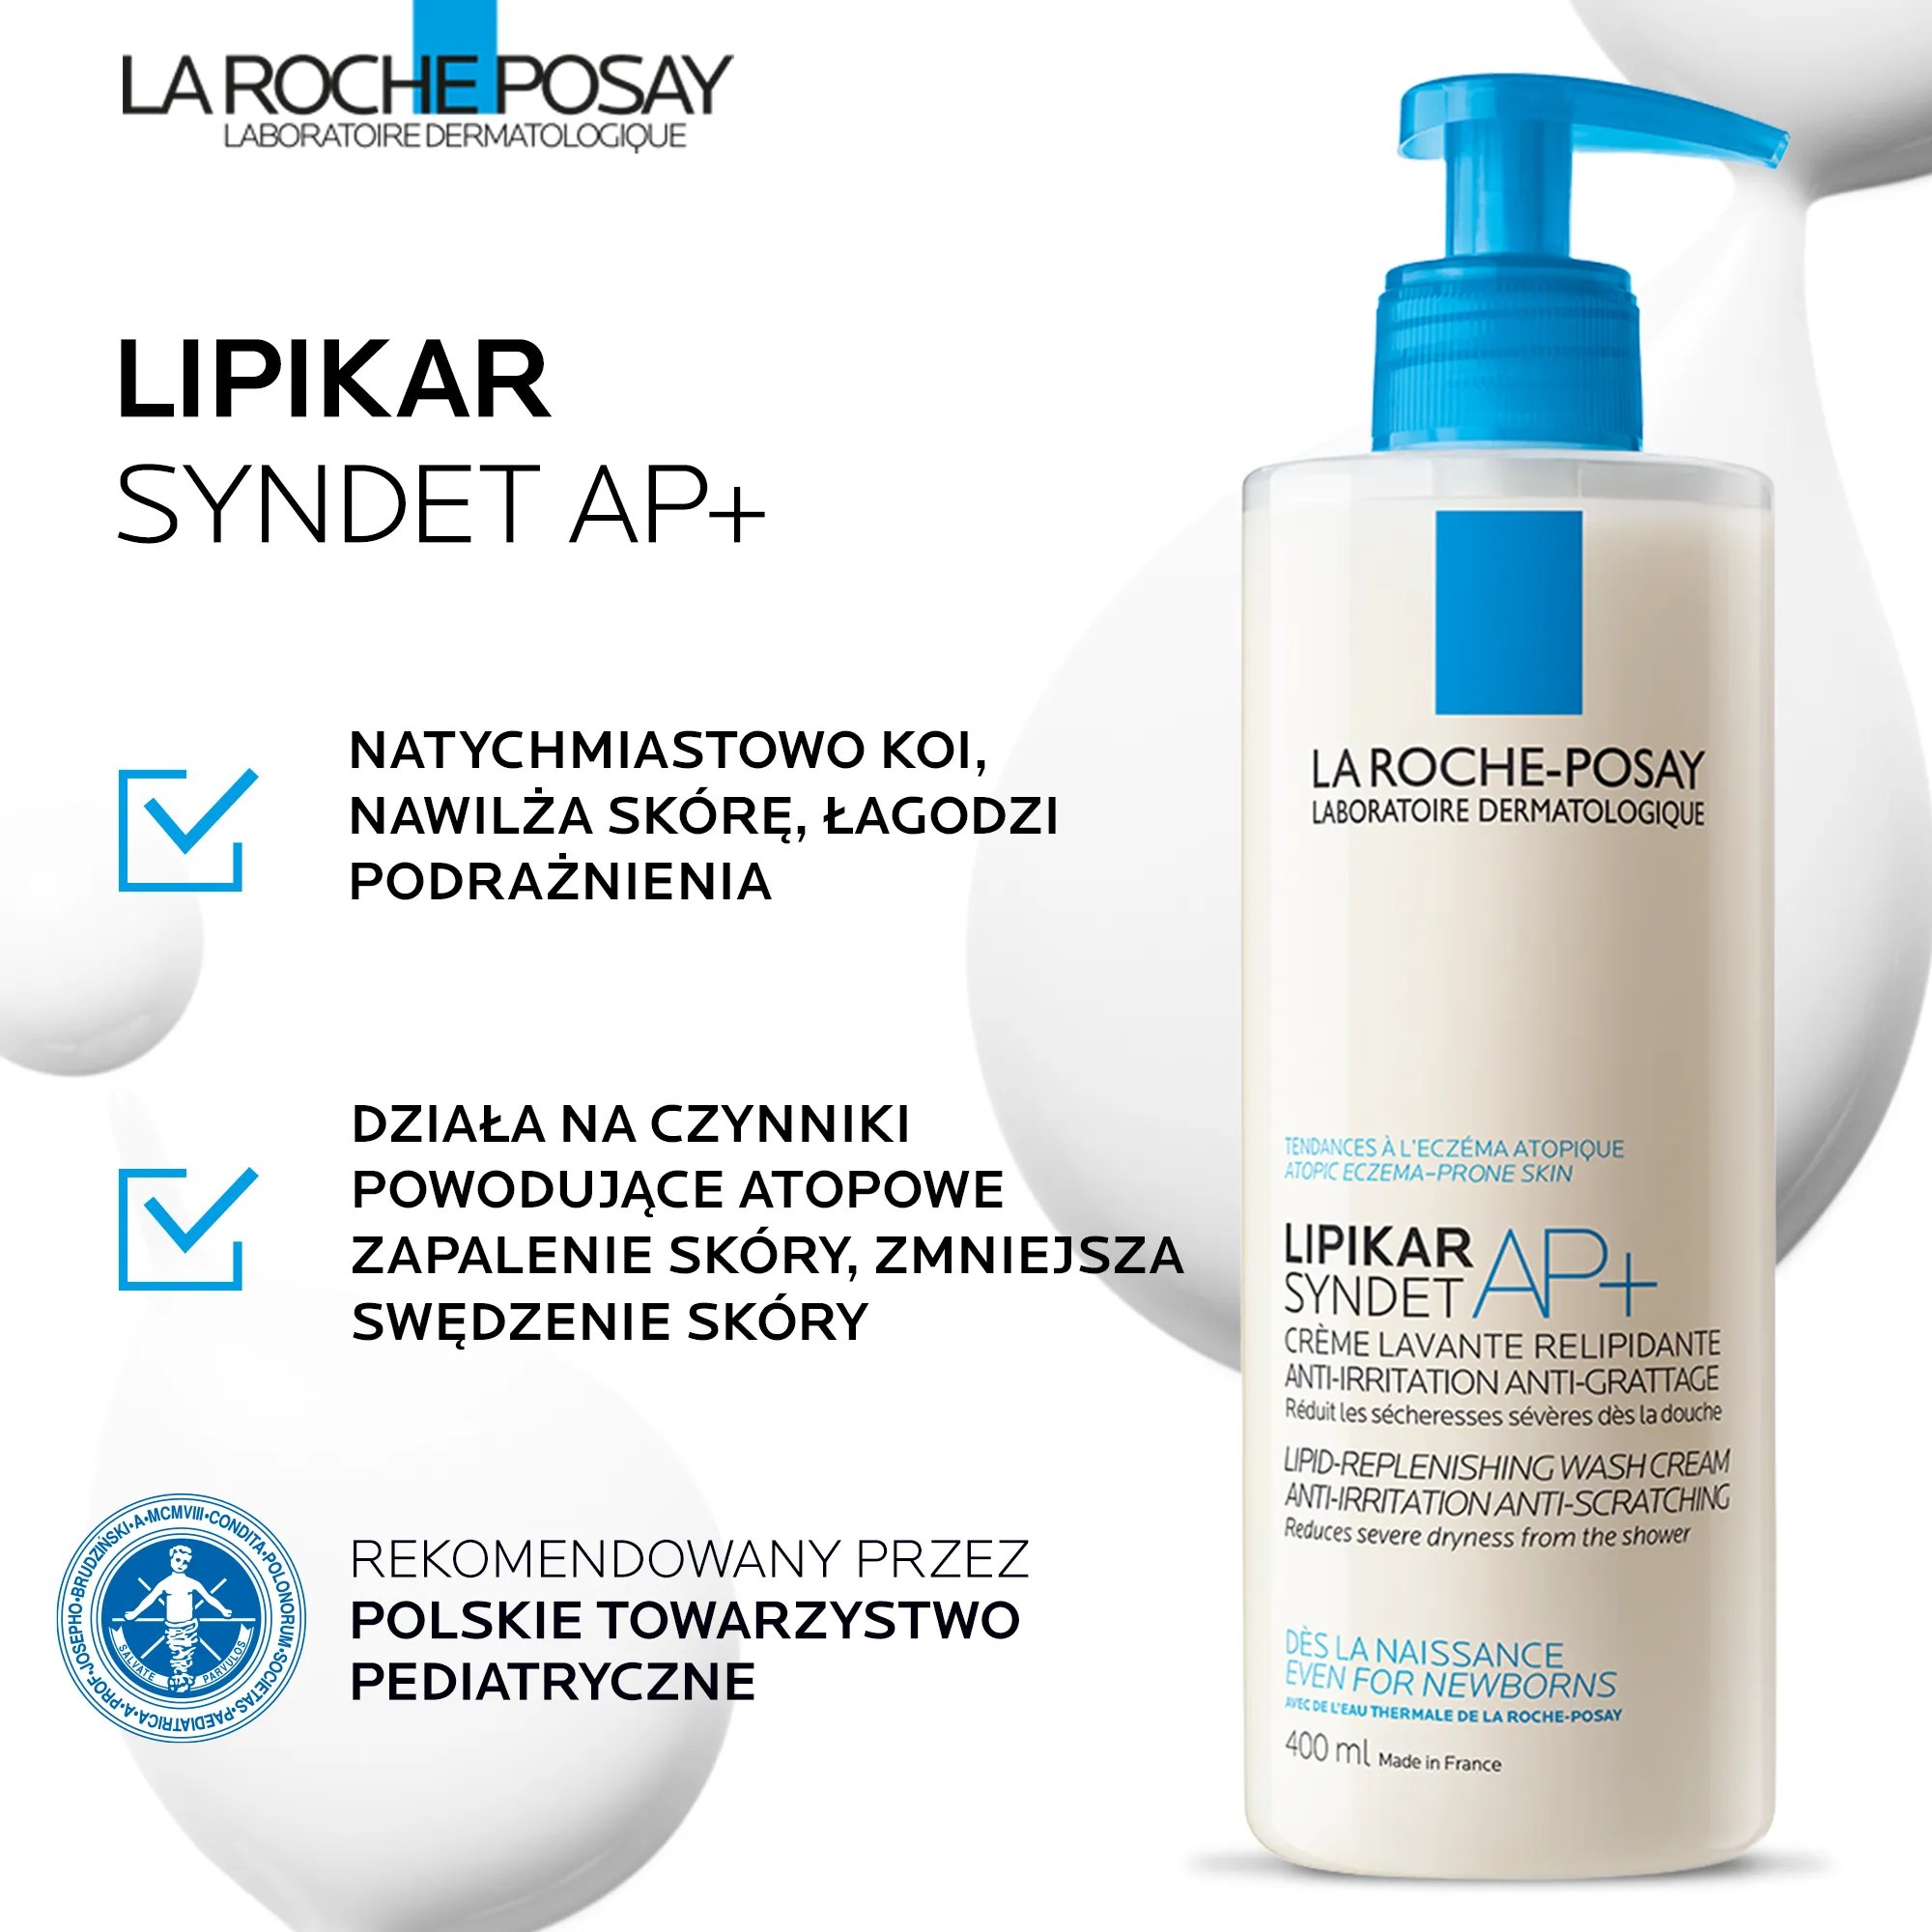 La Roche-Posay Lipikar Syndet AP+, krem myjący uzupełniający poziom lipidów, 200 ml 